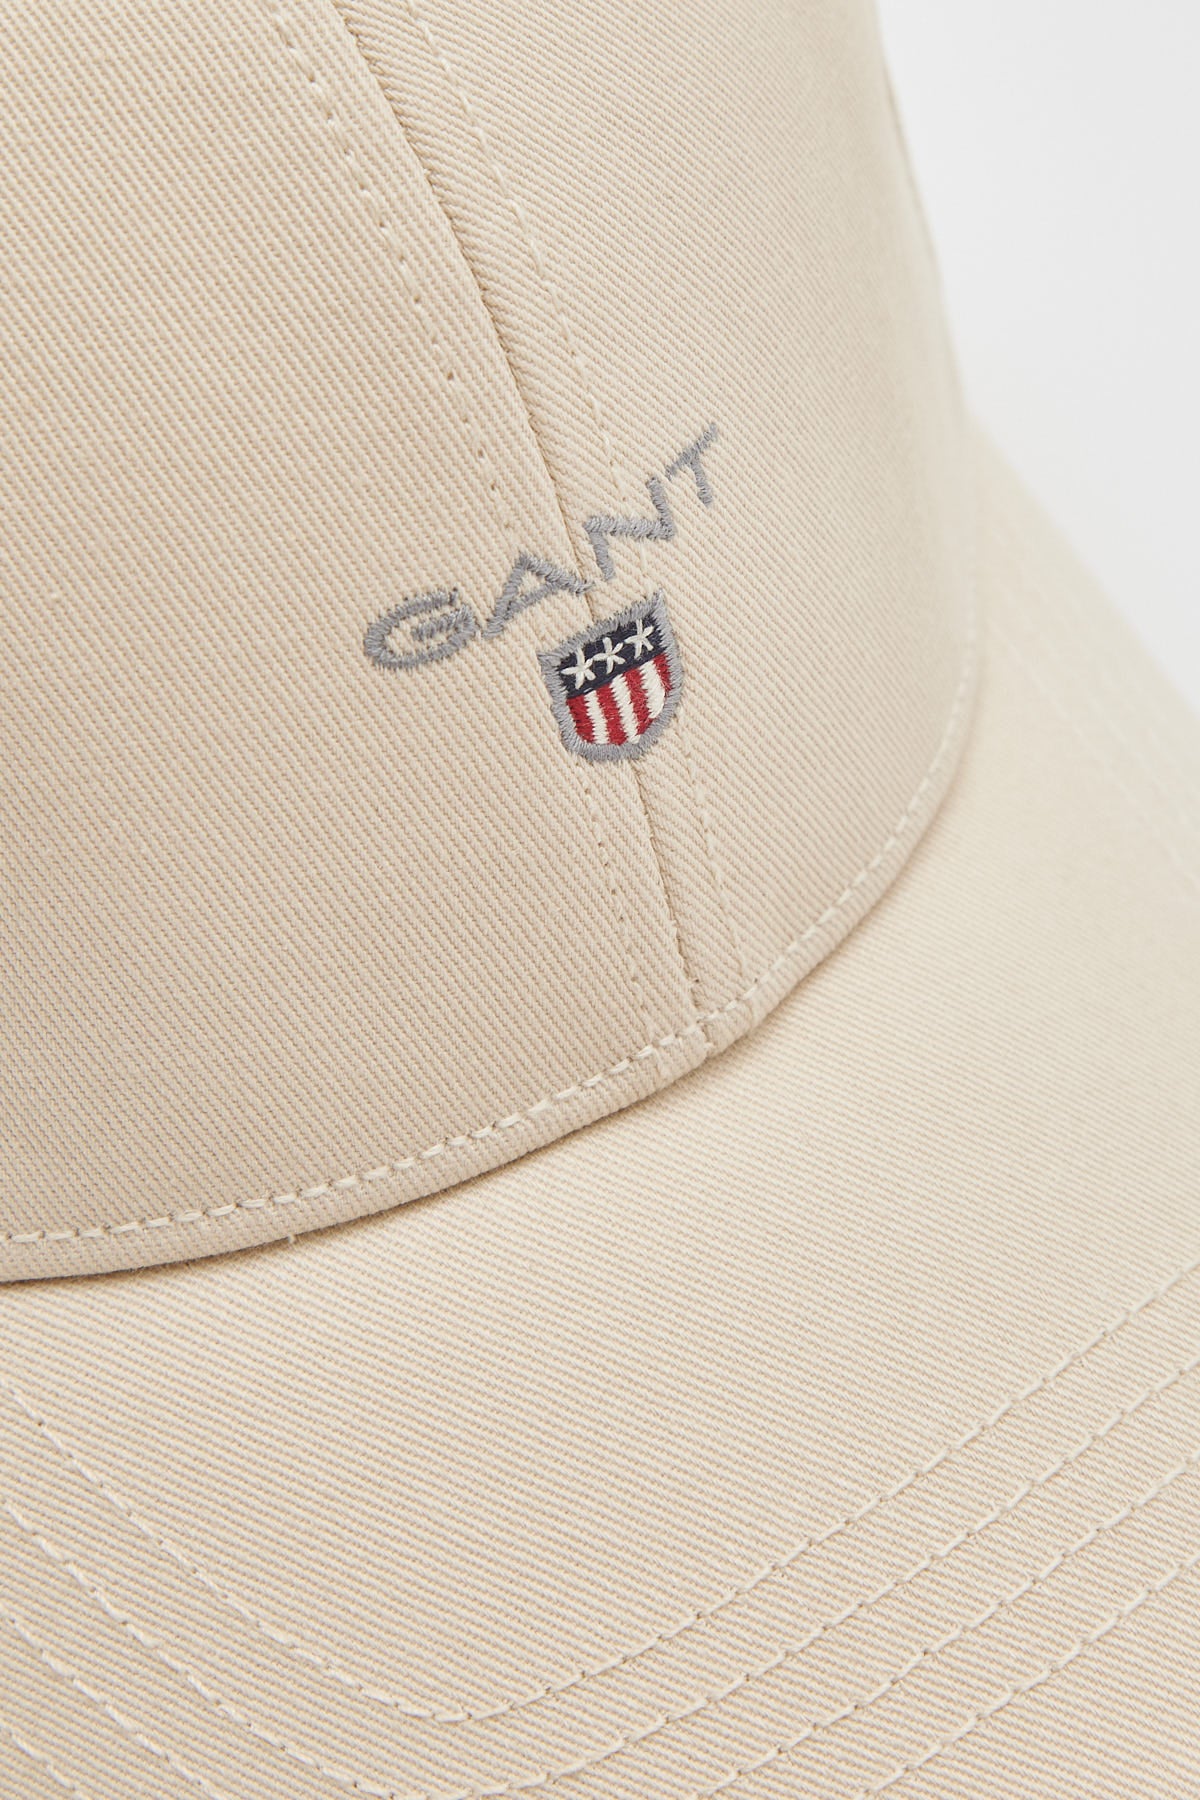 Gant High Twill Cotton Cap Putty